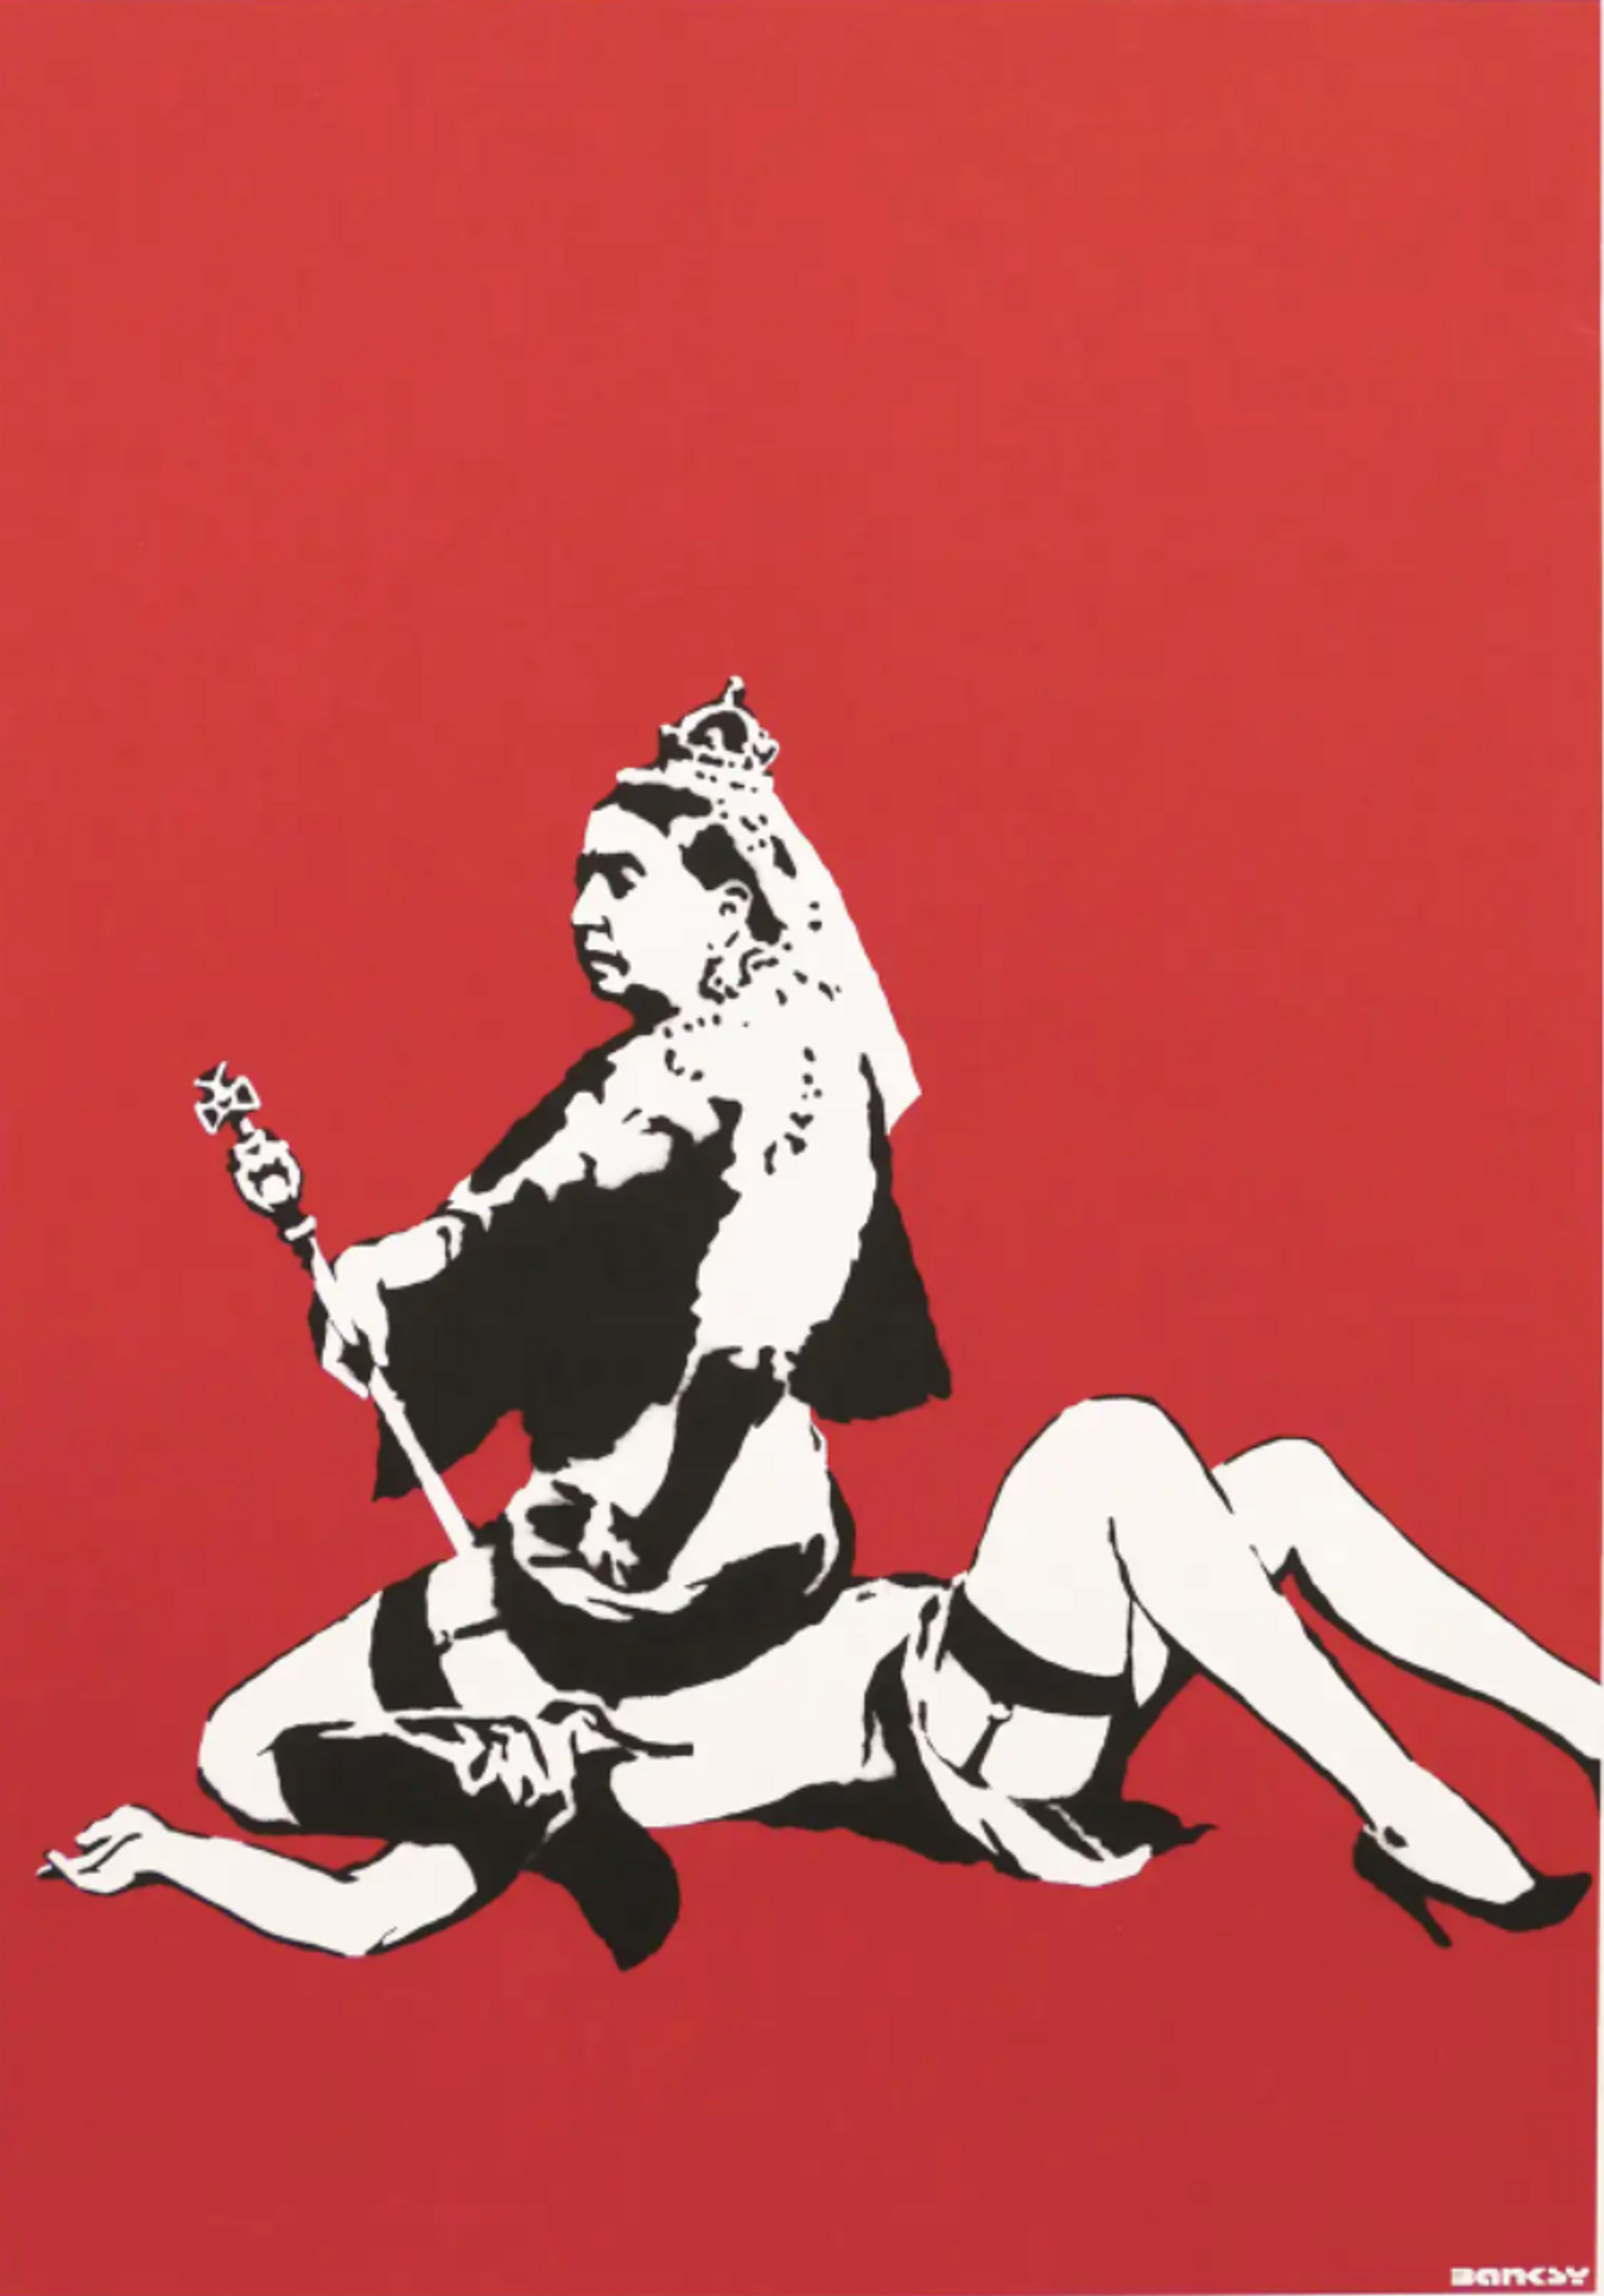 Queen Victoria by Banksy